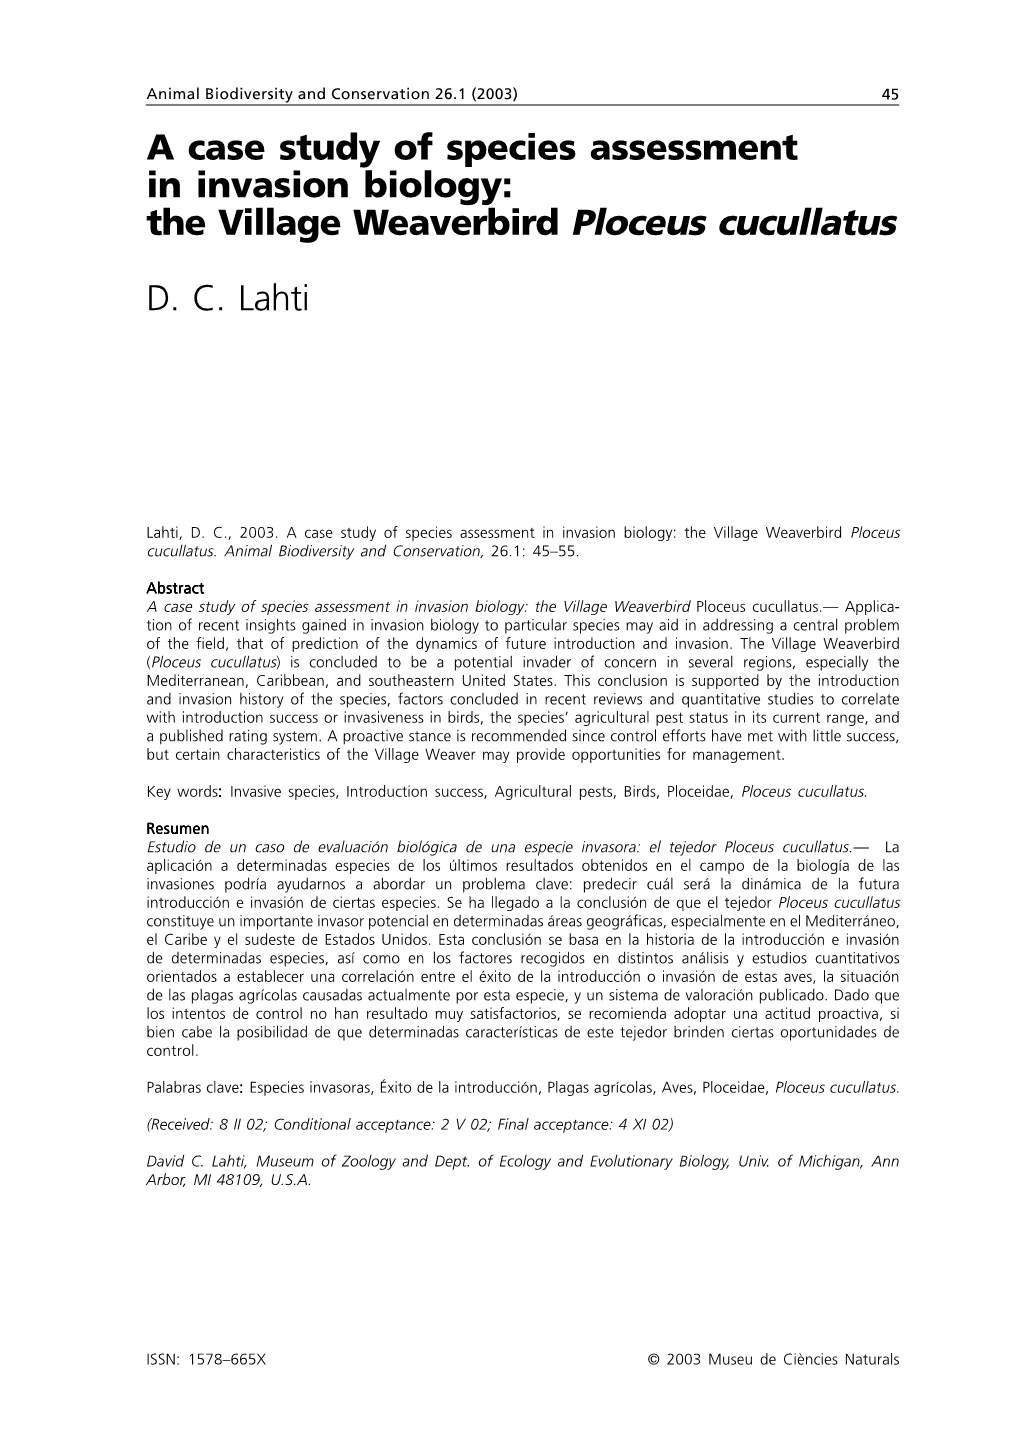 The Village Weaverbird Ploceus Cucullatus DC Lahti